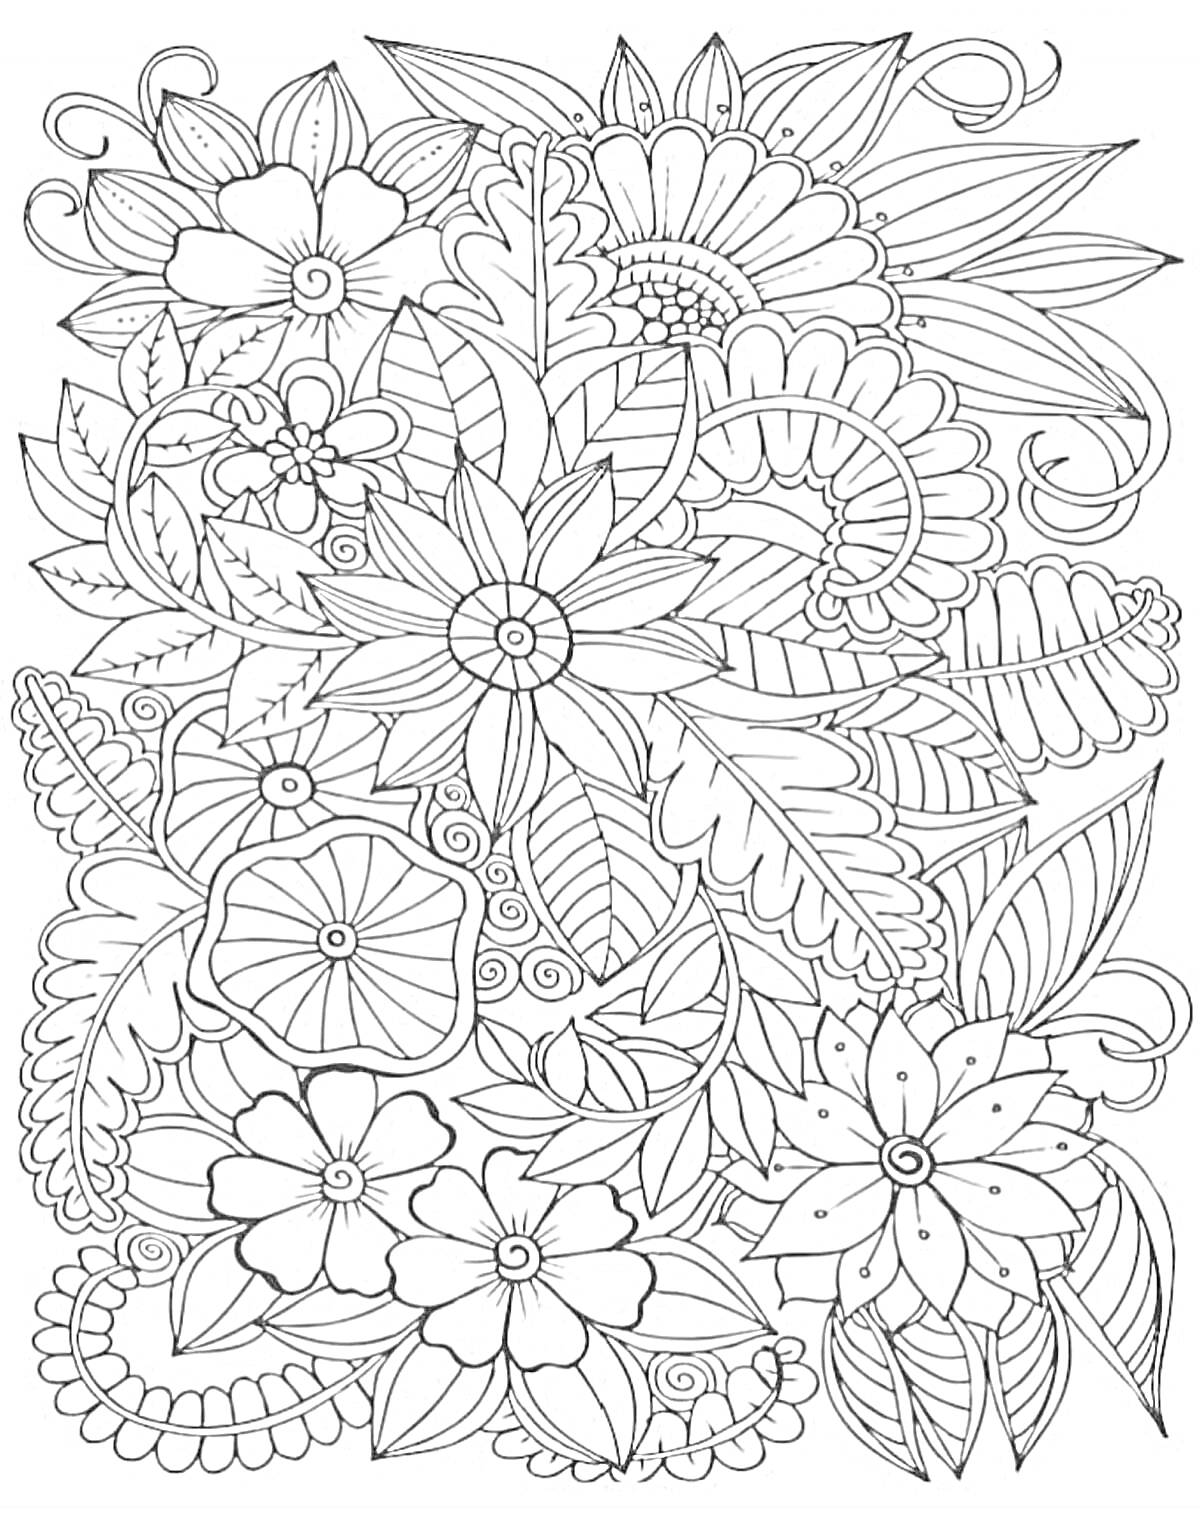 Раскраска Рисунок в стиле раскраски с множеством цветов, листьев и завитков